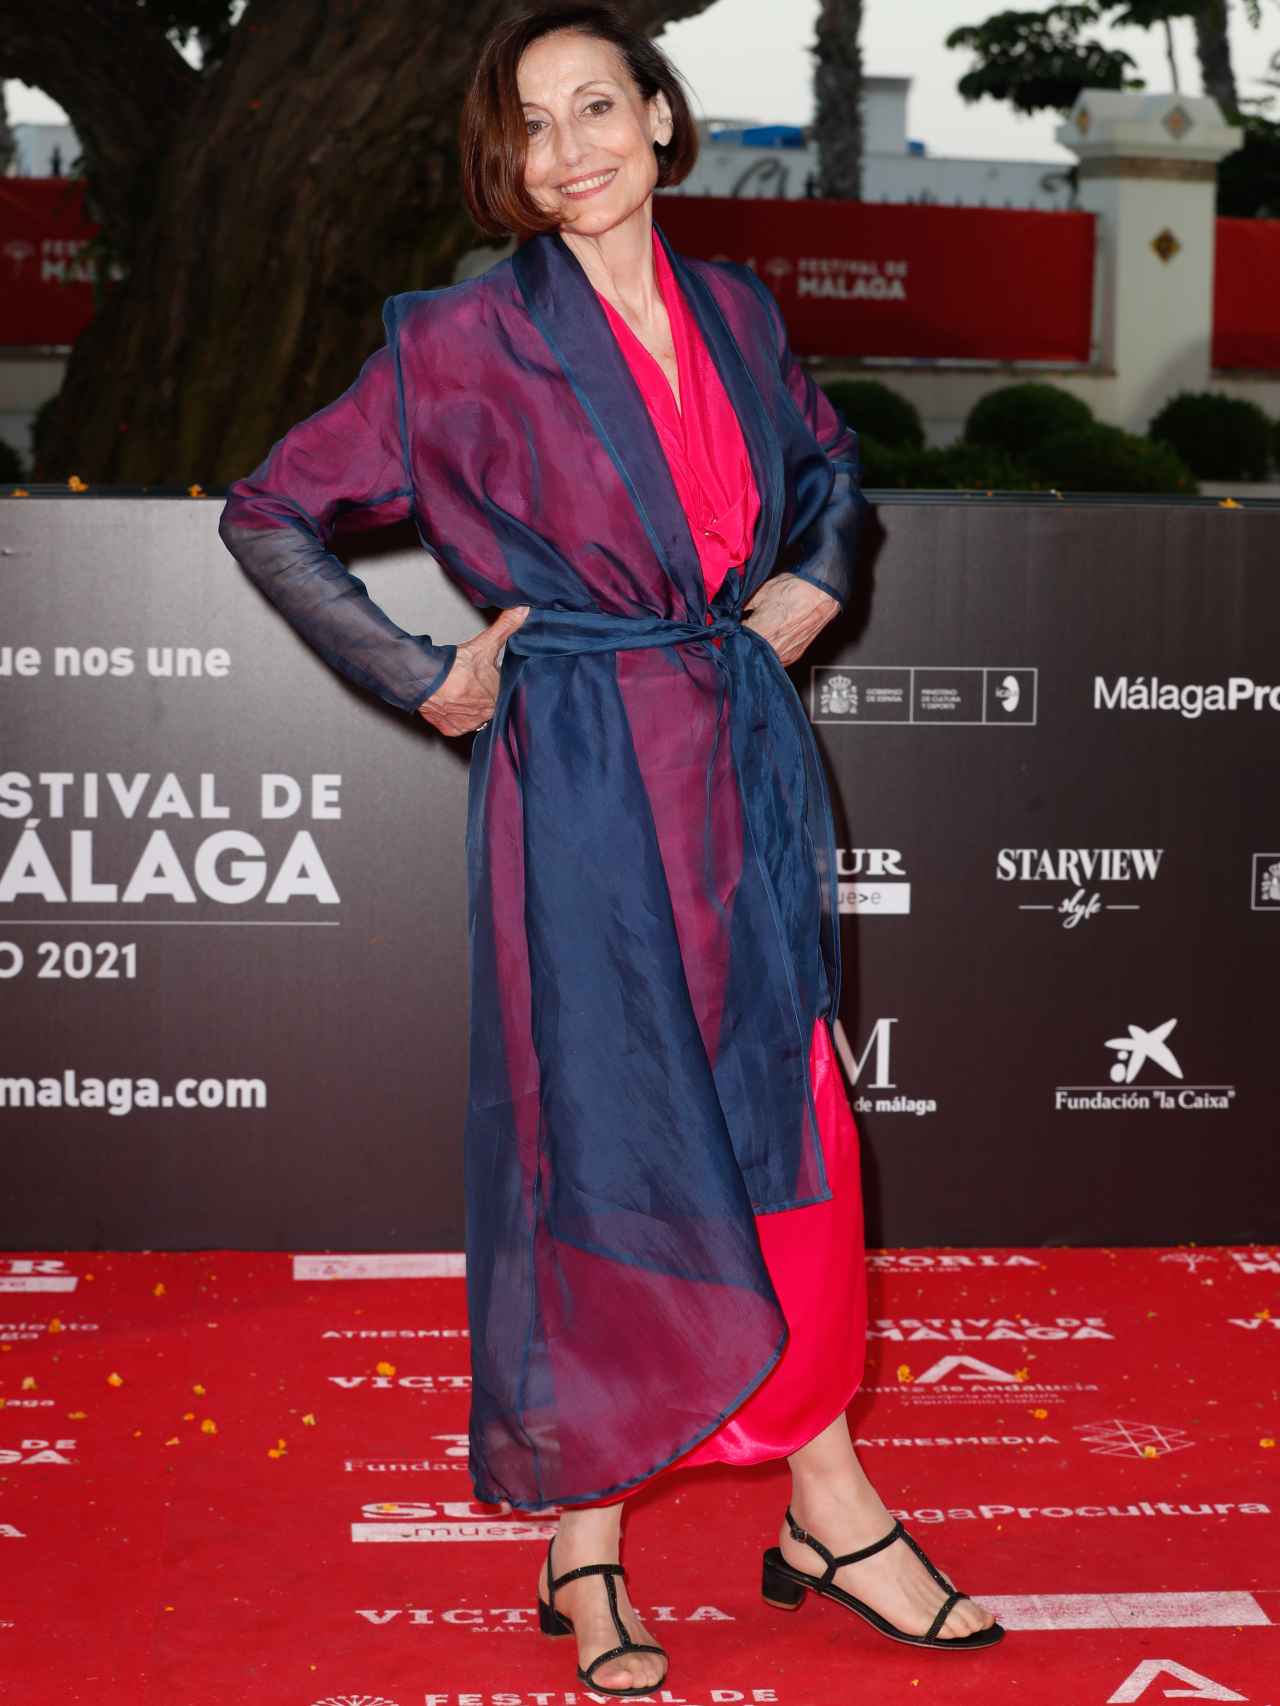 La actriz Carme Elías posando durante el Festival de Málaga en junio de 2021.